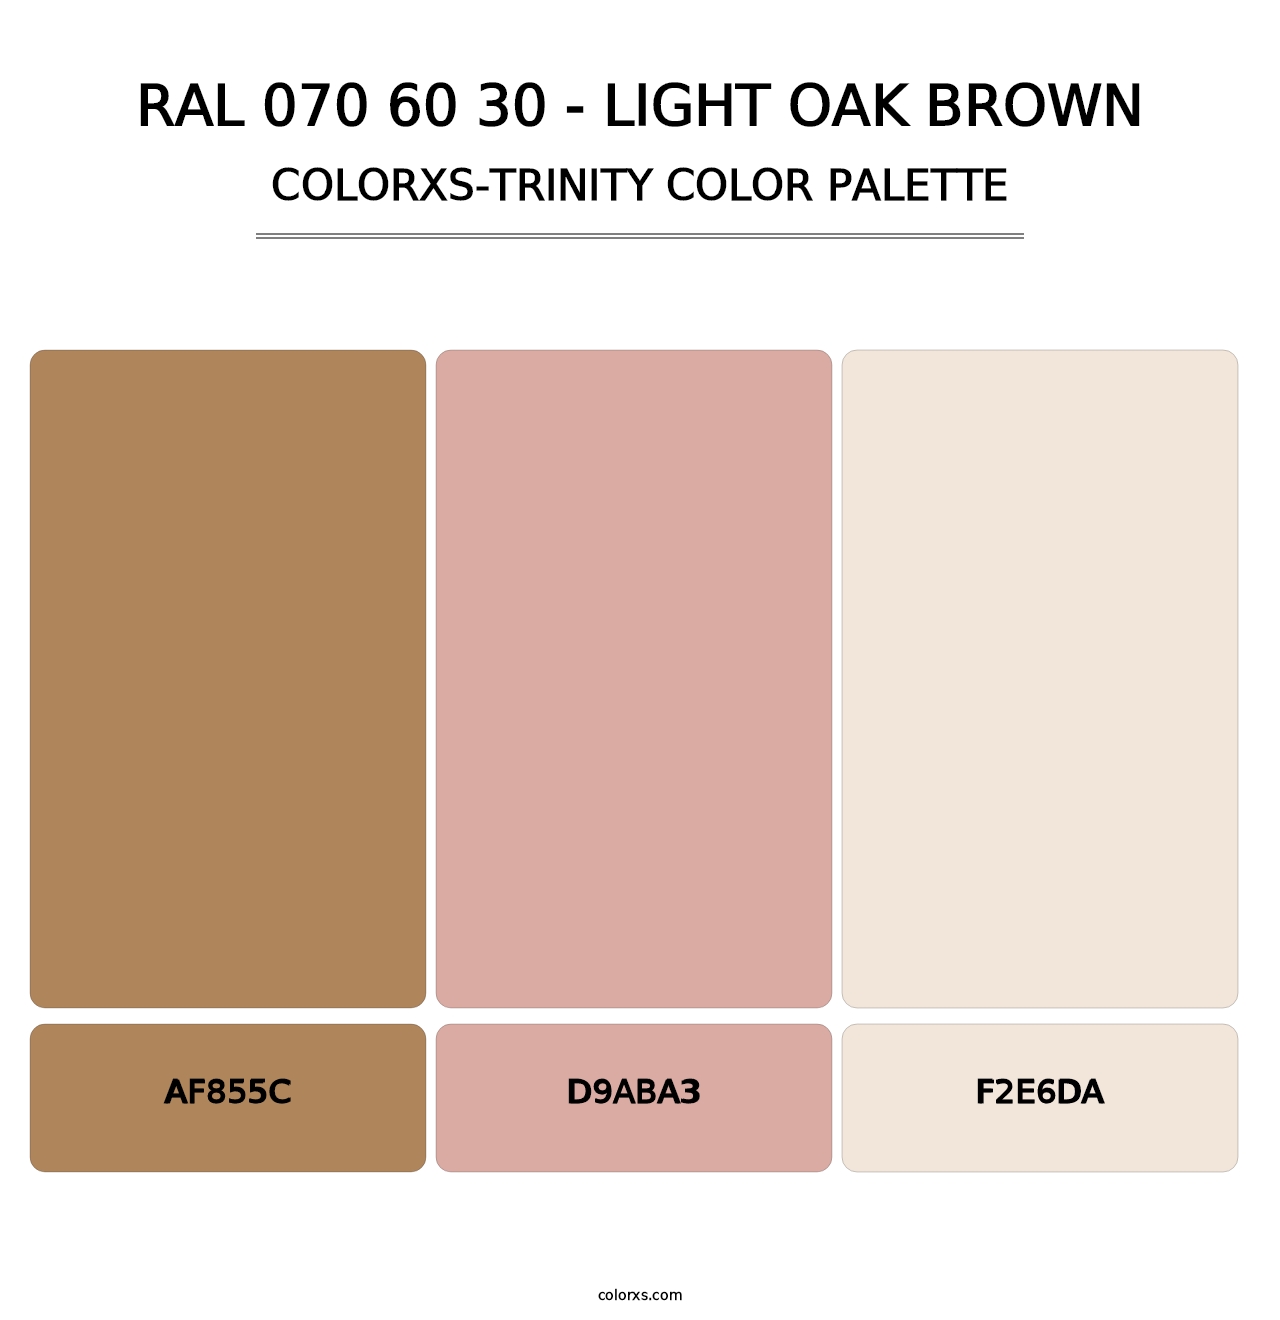 RAL 070 60 30 - Light Oak Brown - Colorxs Trinity Palette